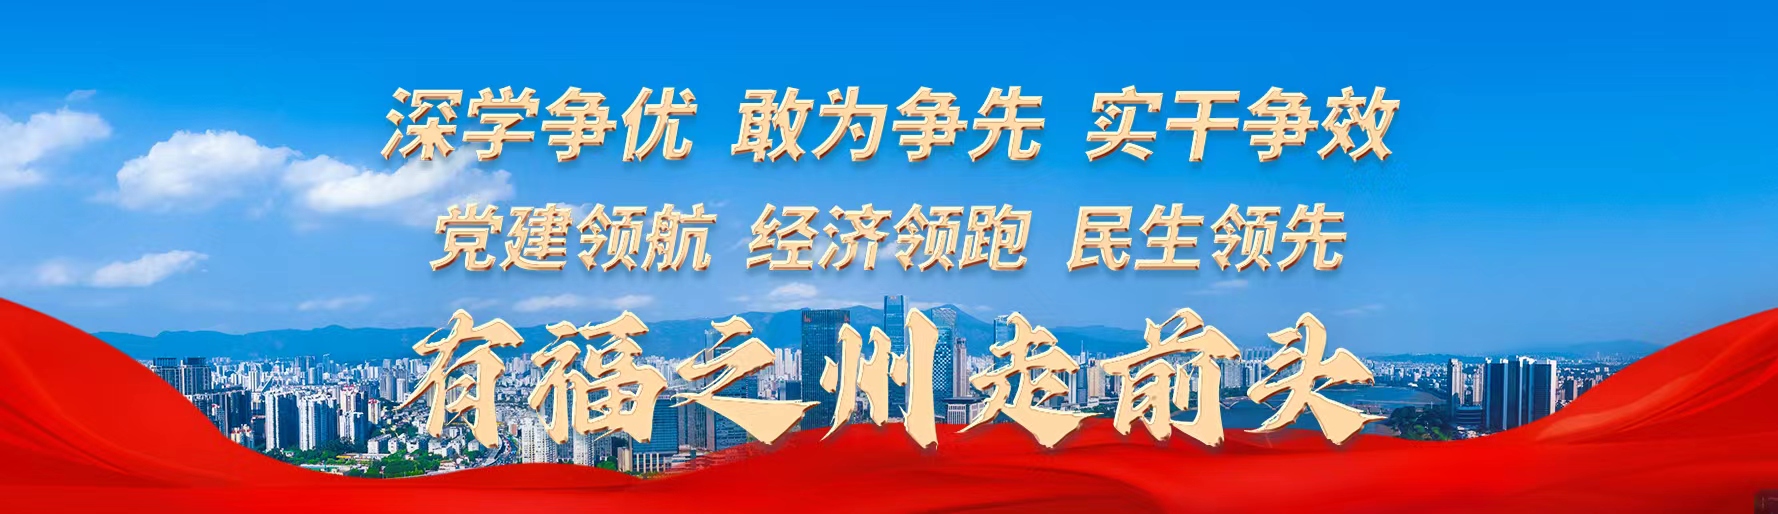 江阴港两项业务跻身全国前十 内贸集装箱吞吐量超110万标箱